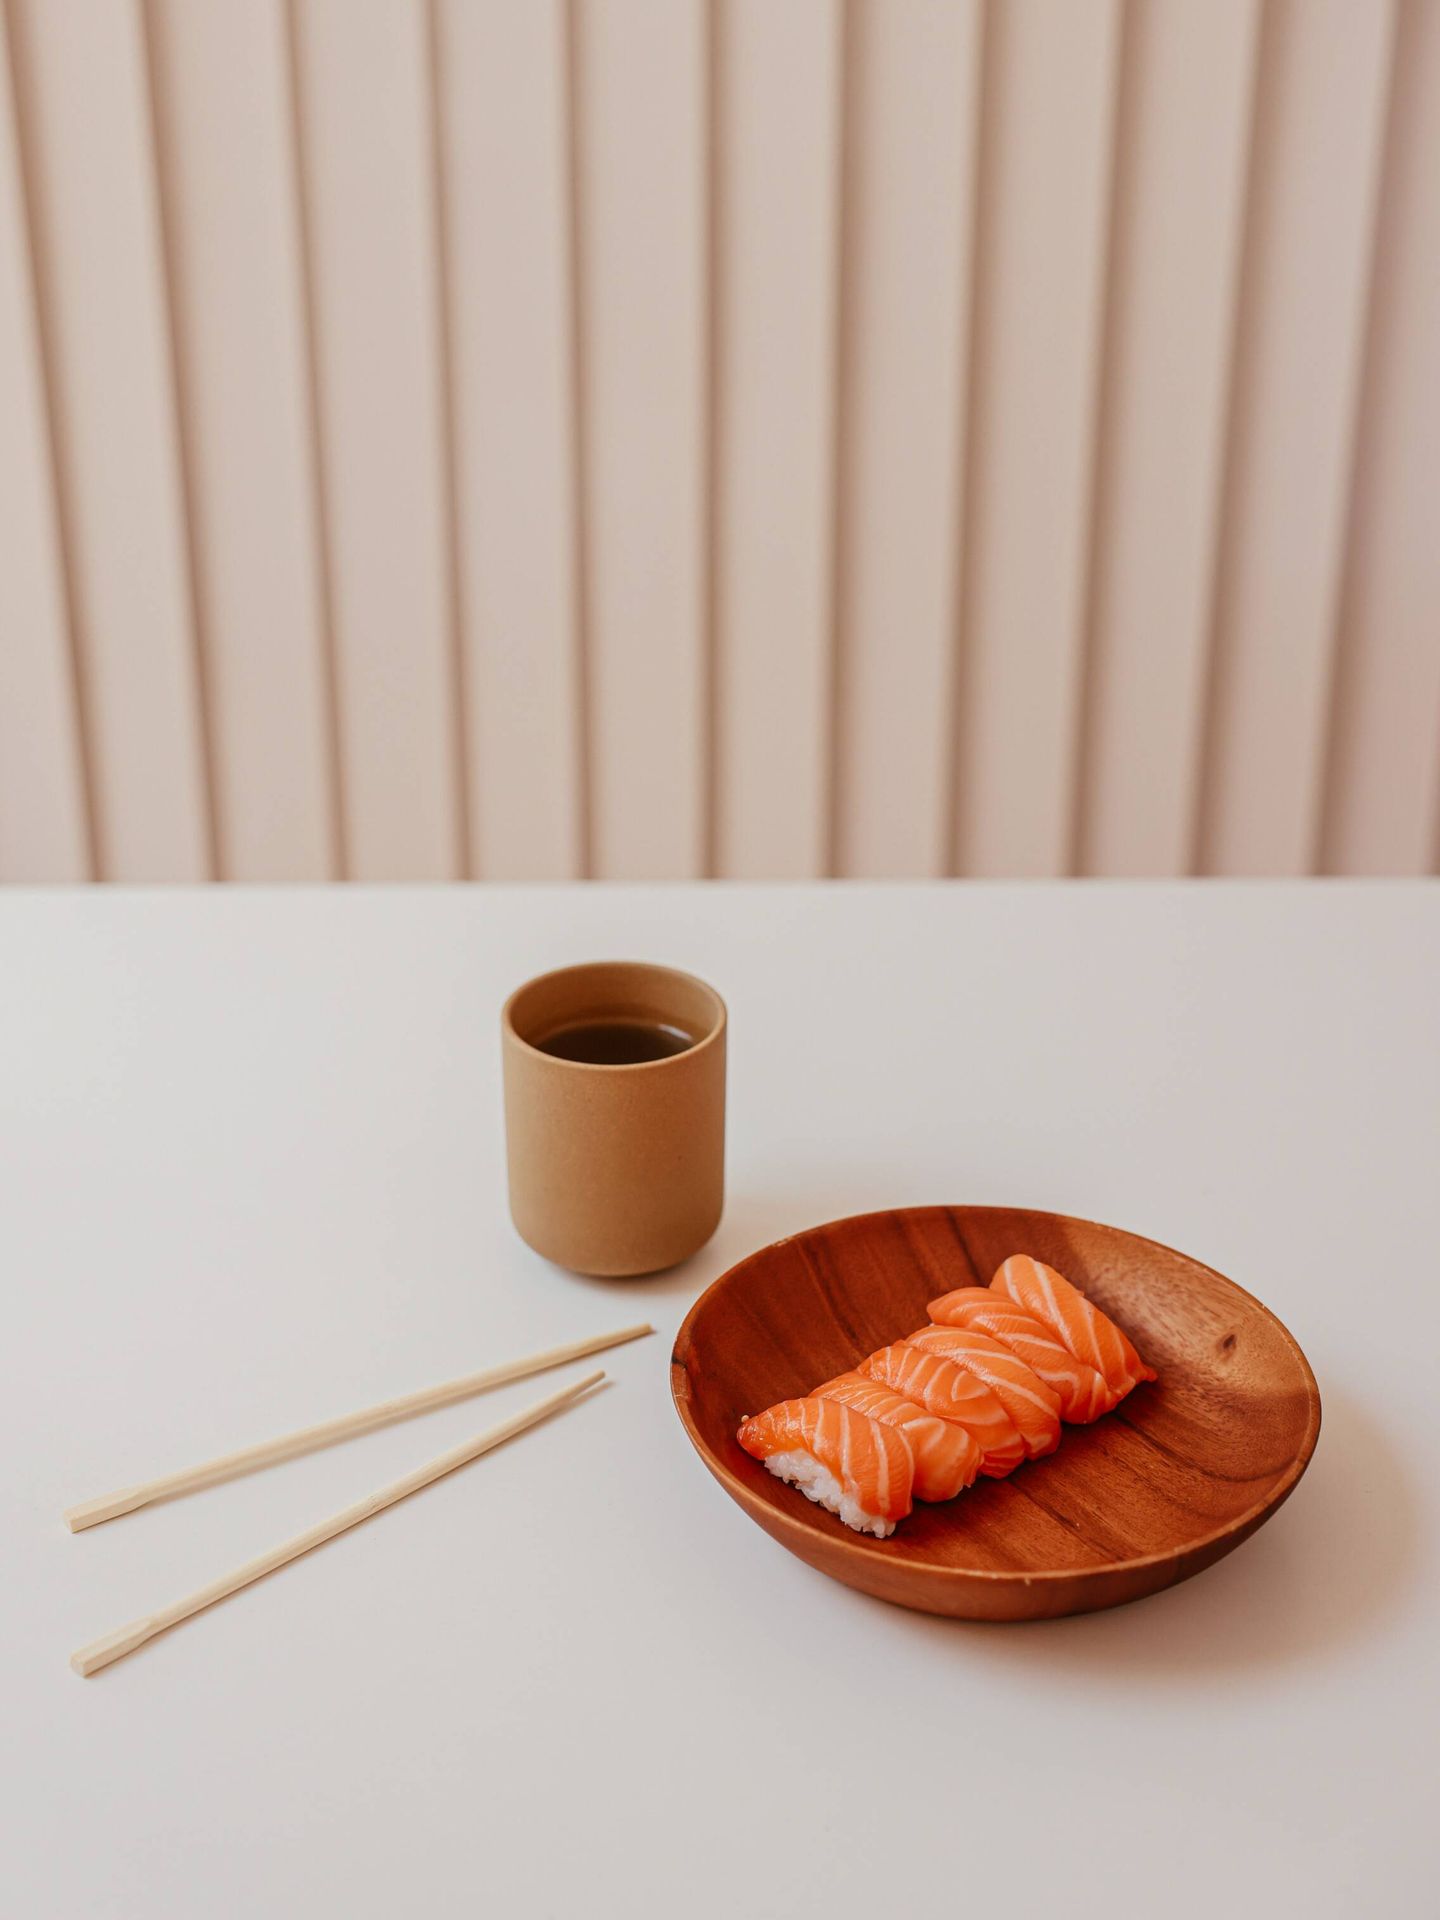 El té verde también es bueno y está incluido en la dieta del sushi. (Pexels/Cup of Couple)